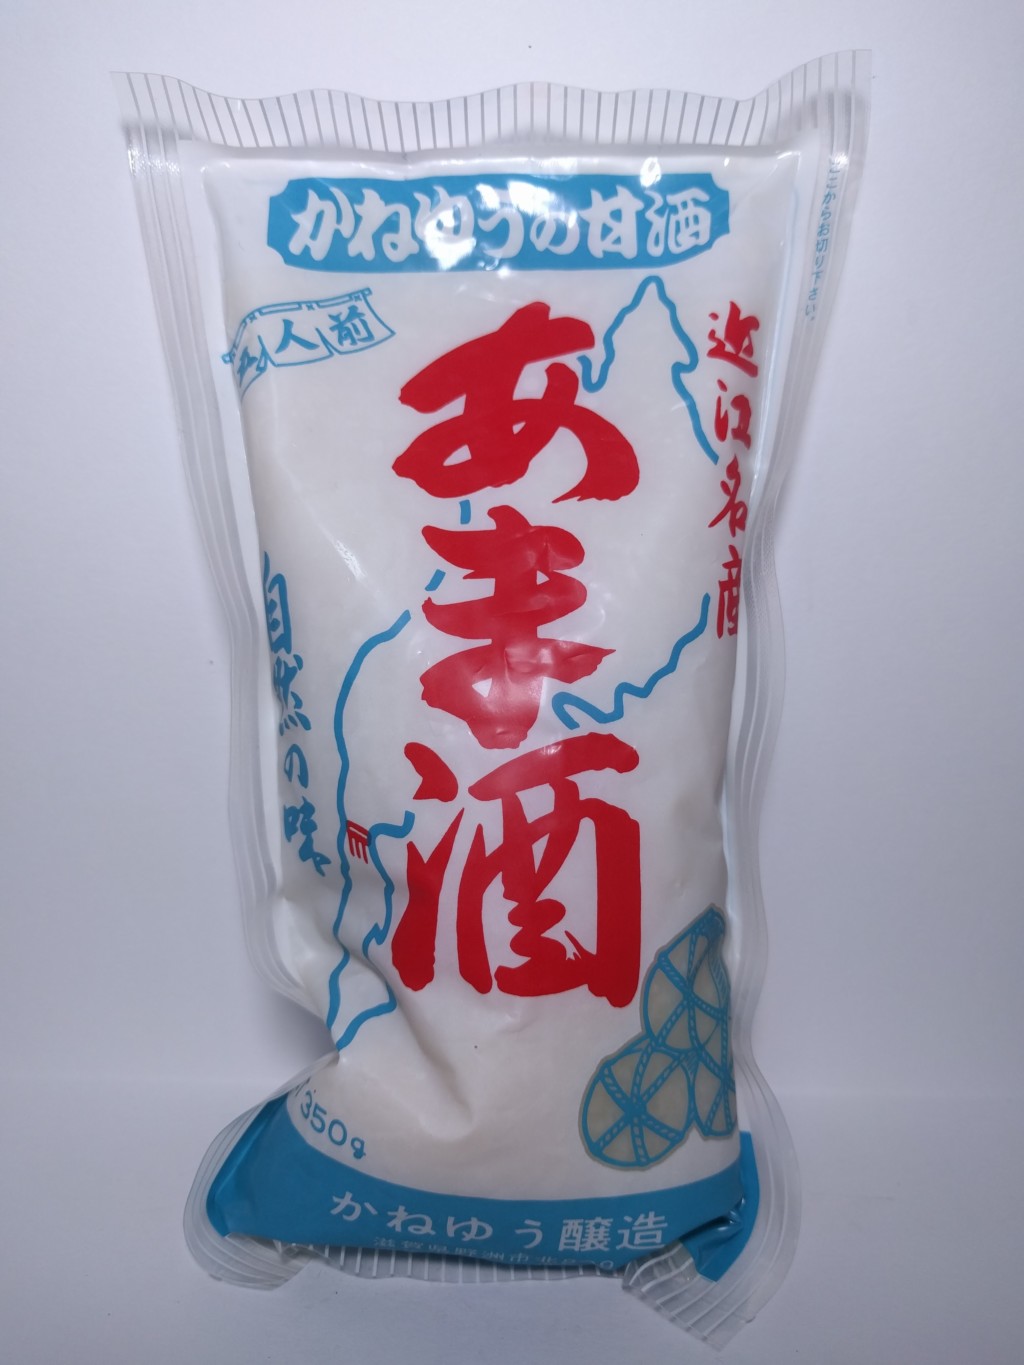 かねゆう醸造の濃縮タイプの全麹仕込みの米麹甘酒『近江名産あま酒』